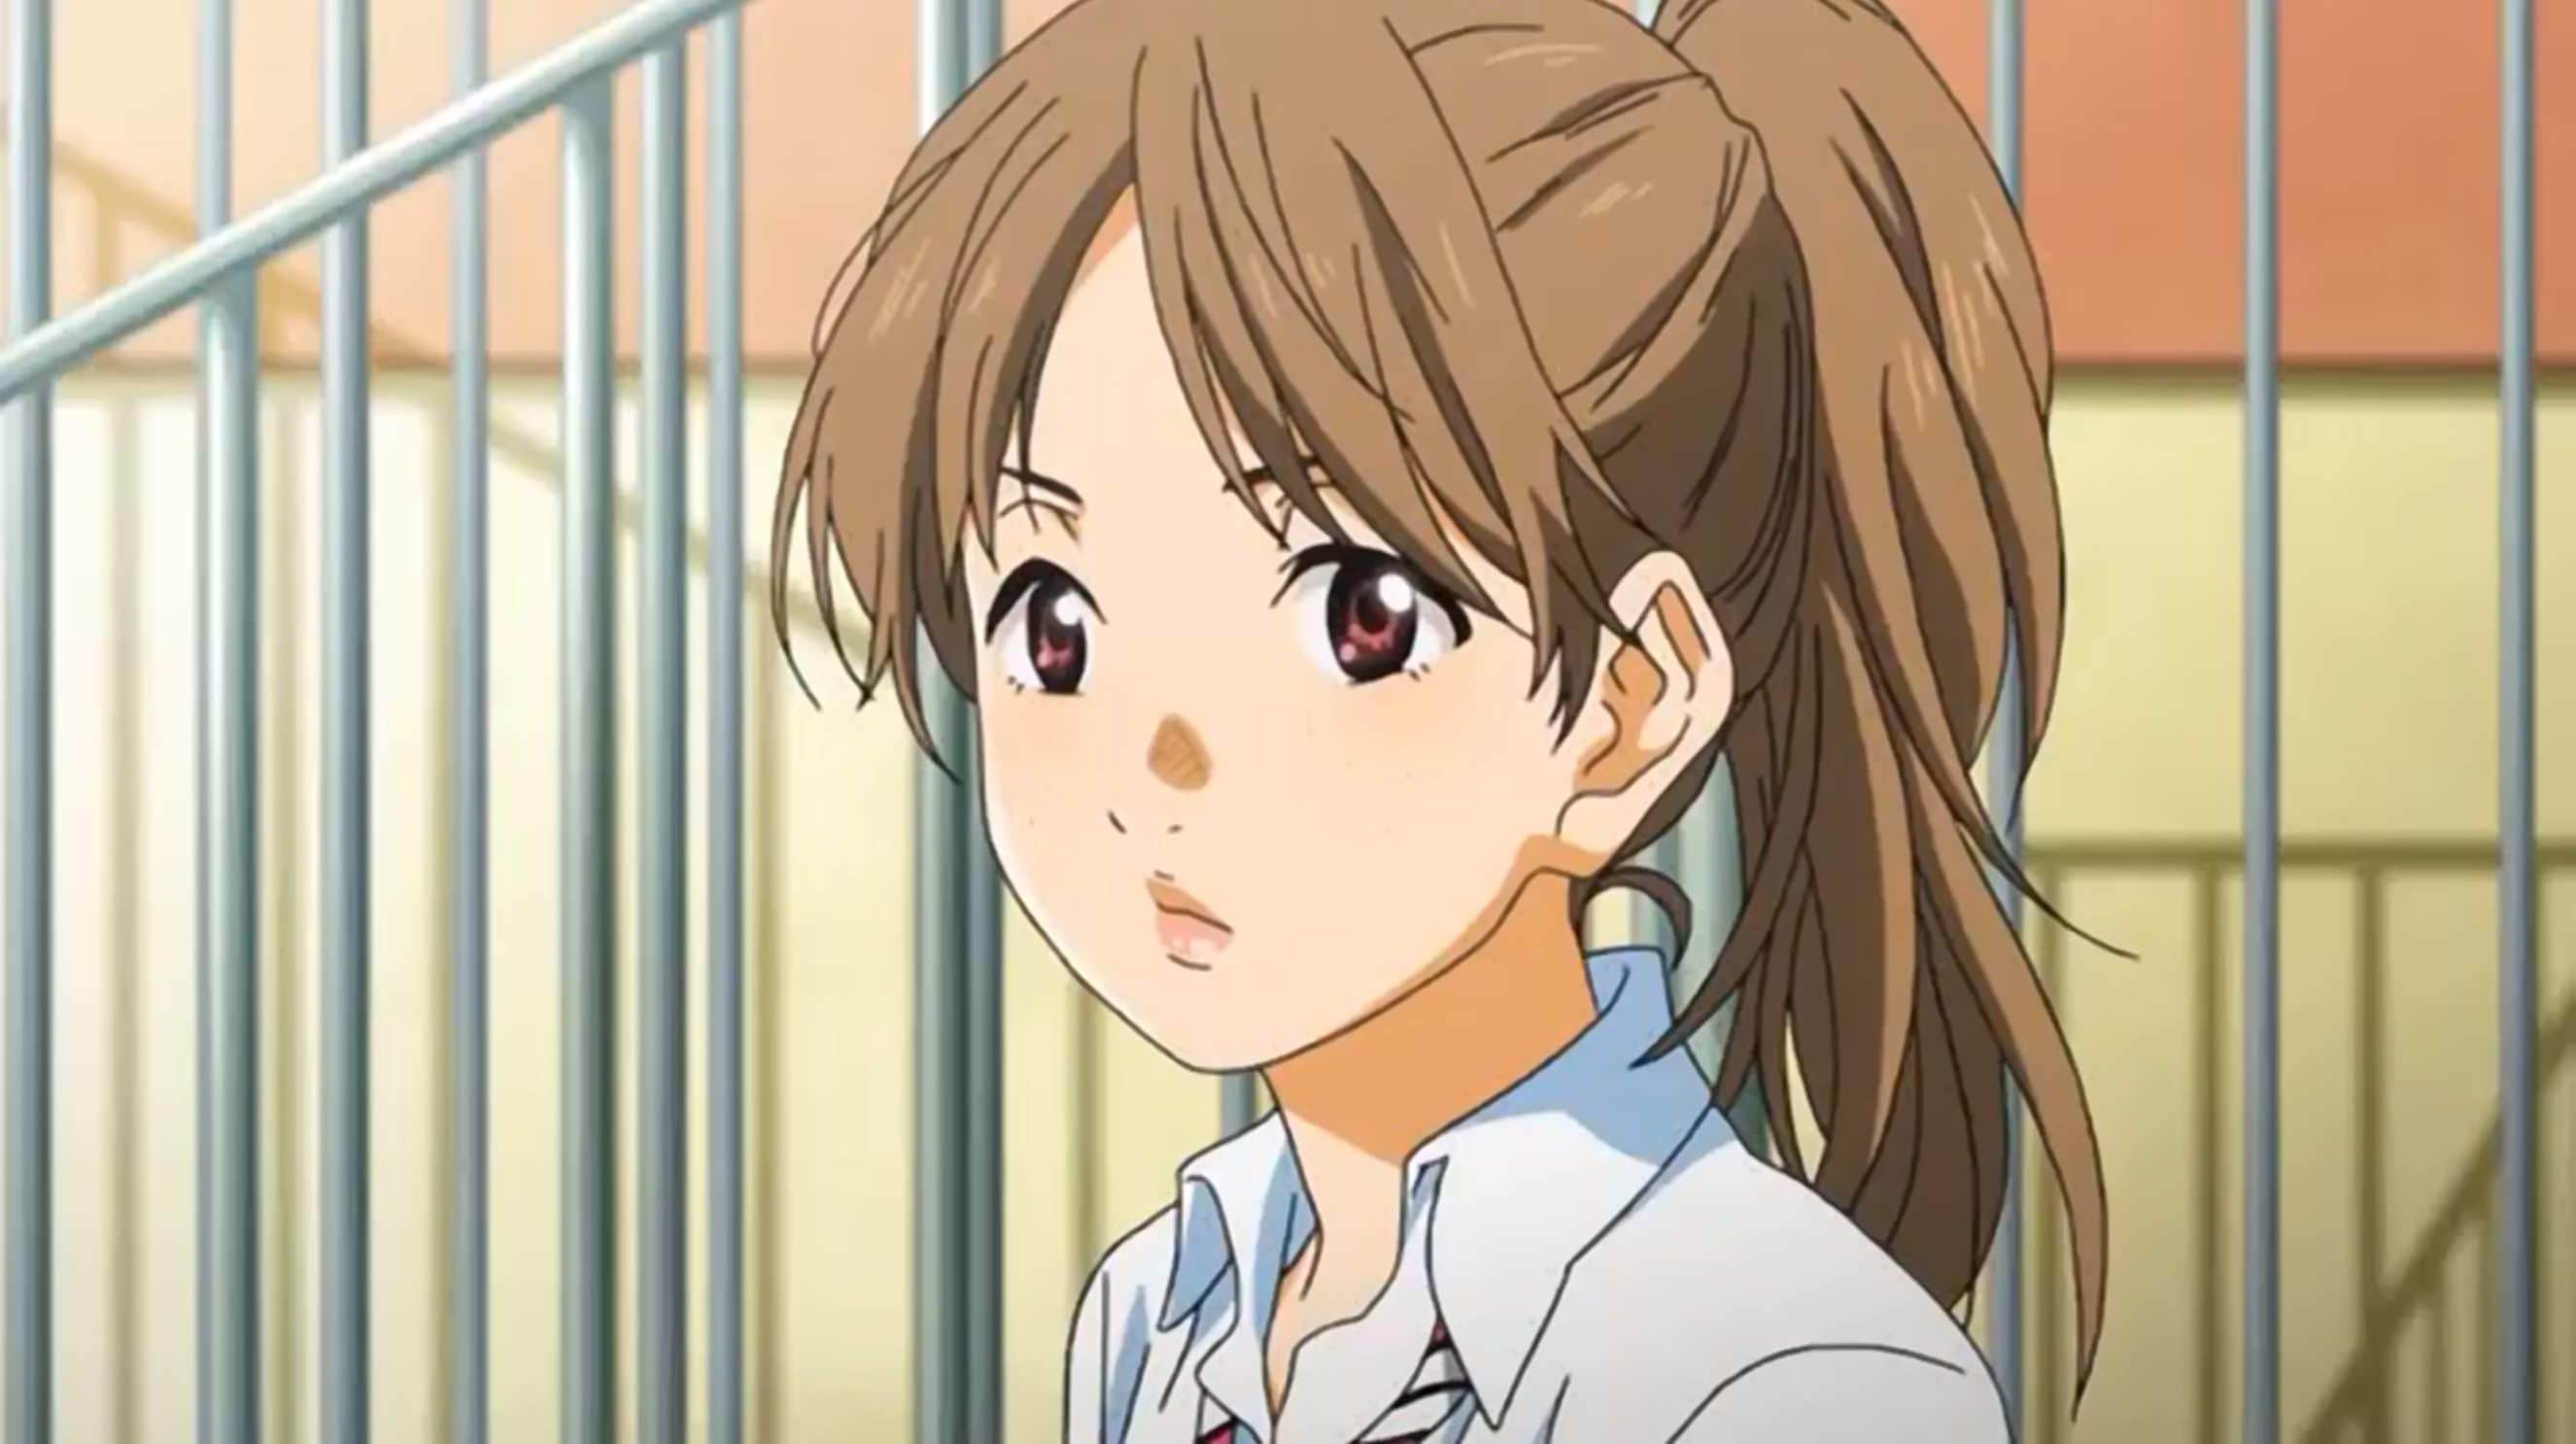 Anime: Shigatsu wa kimi no uso - Your lie in April Source